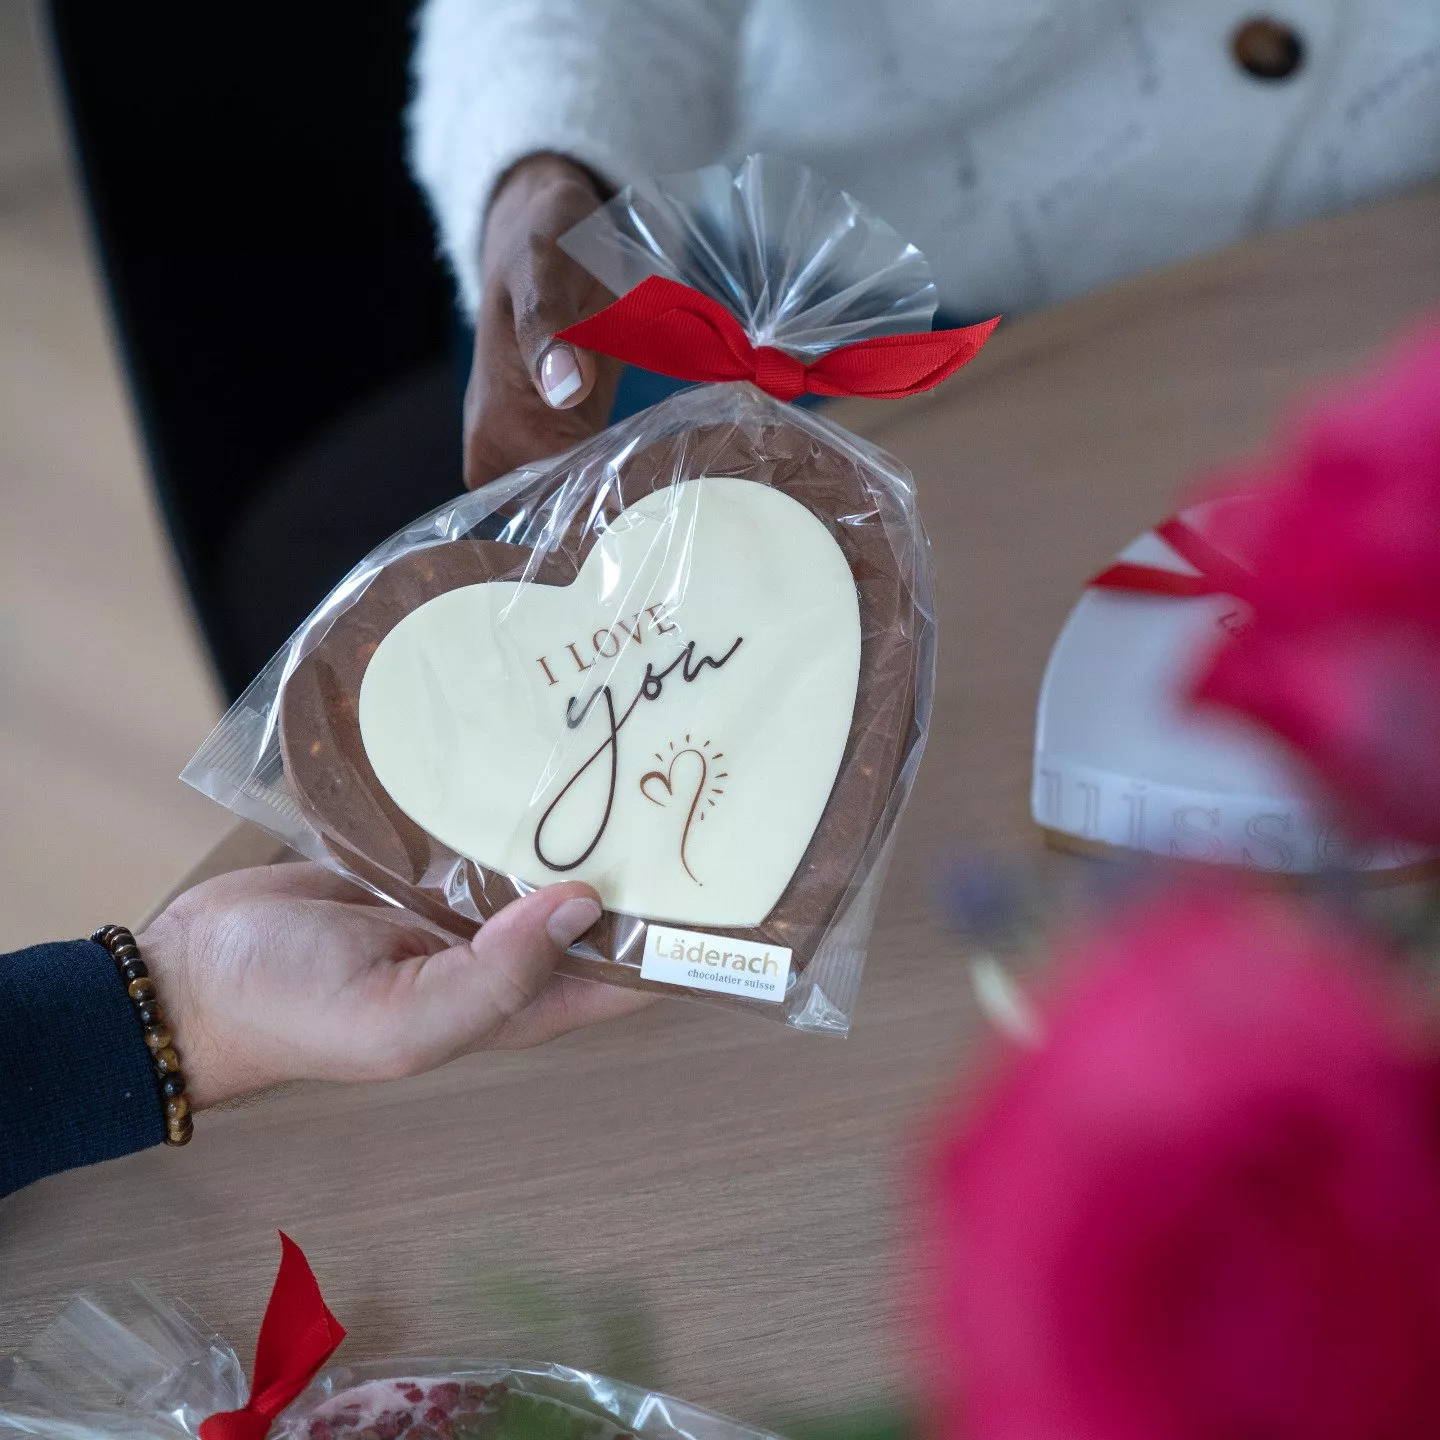 اسماء محلات حلويات في الامارات لتتسوّقي منها في عيد الحب